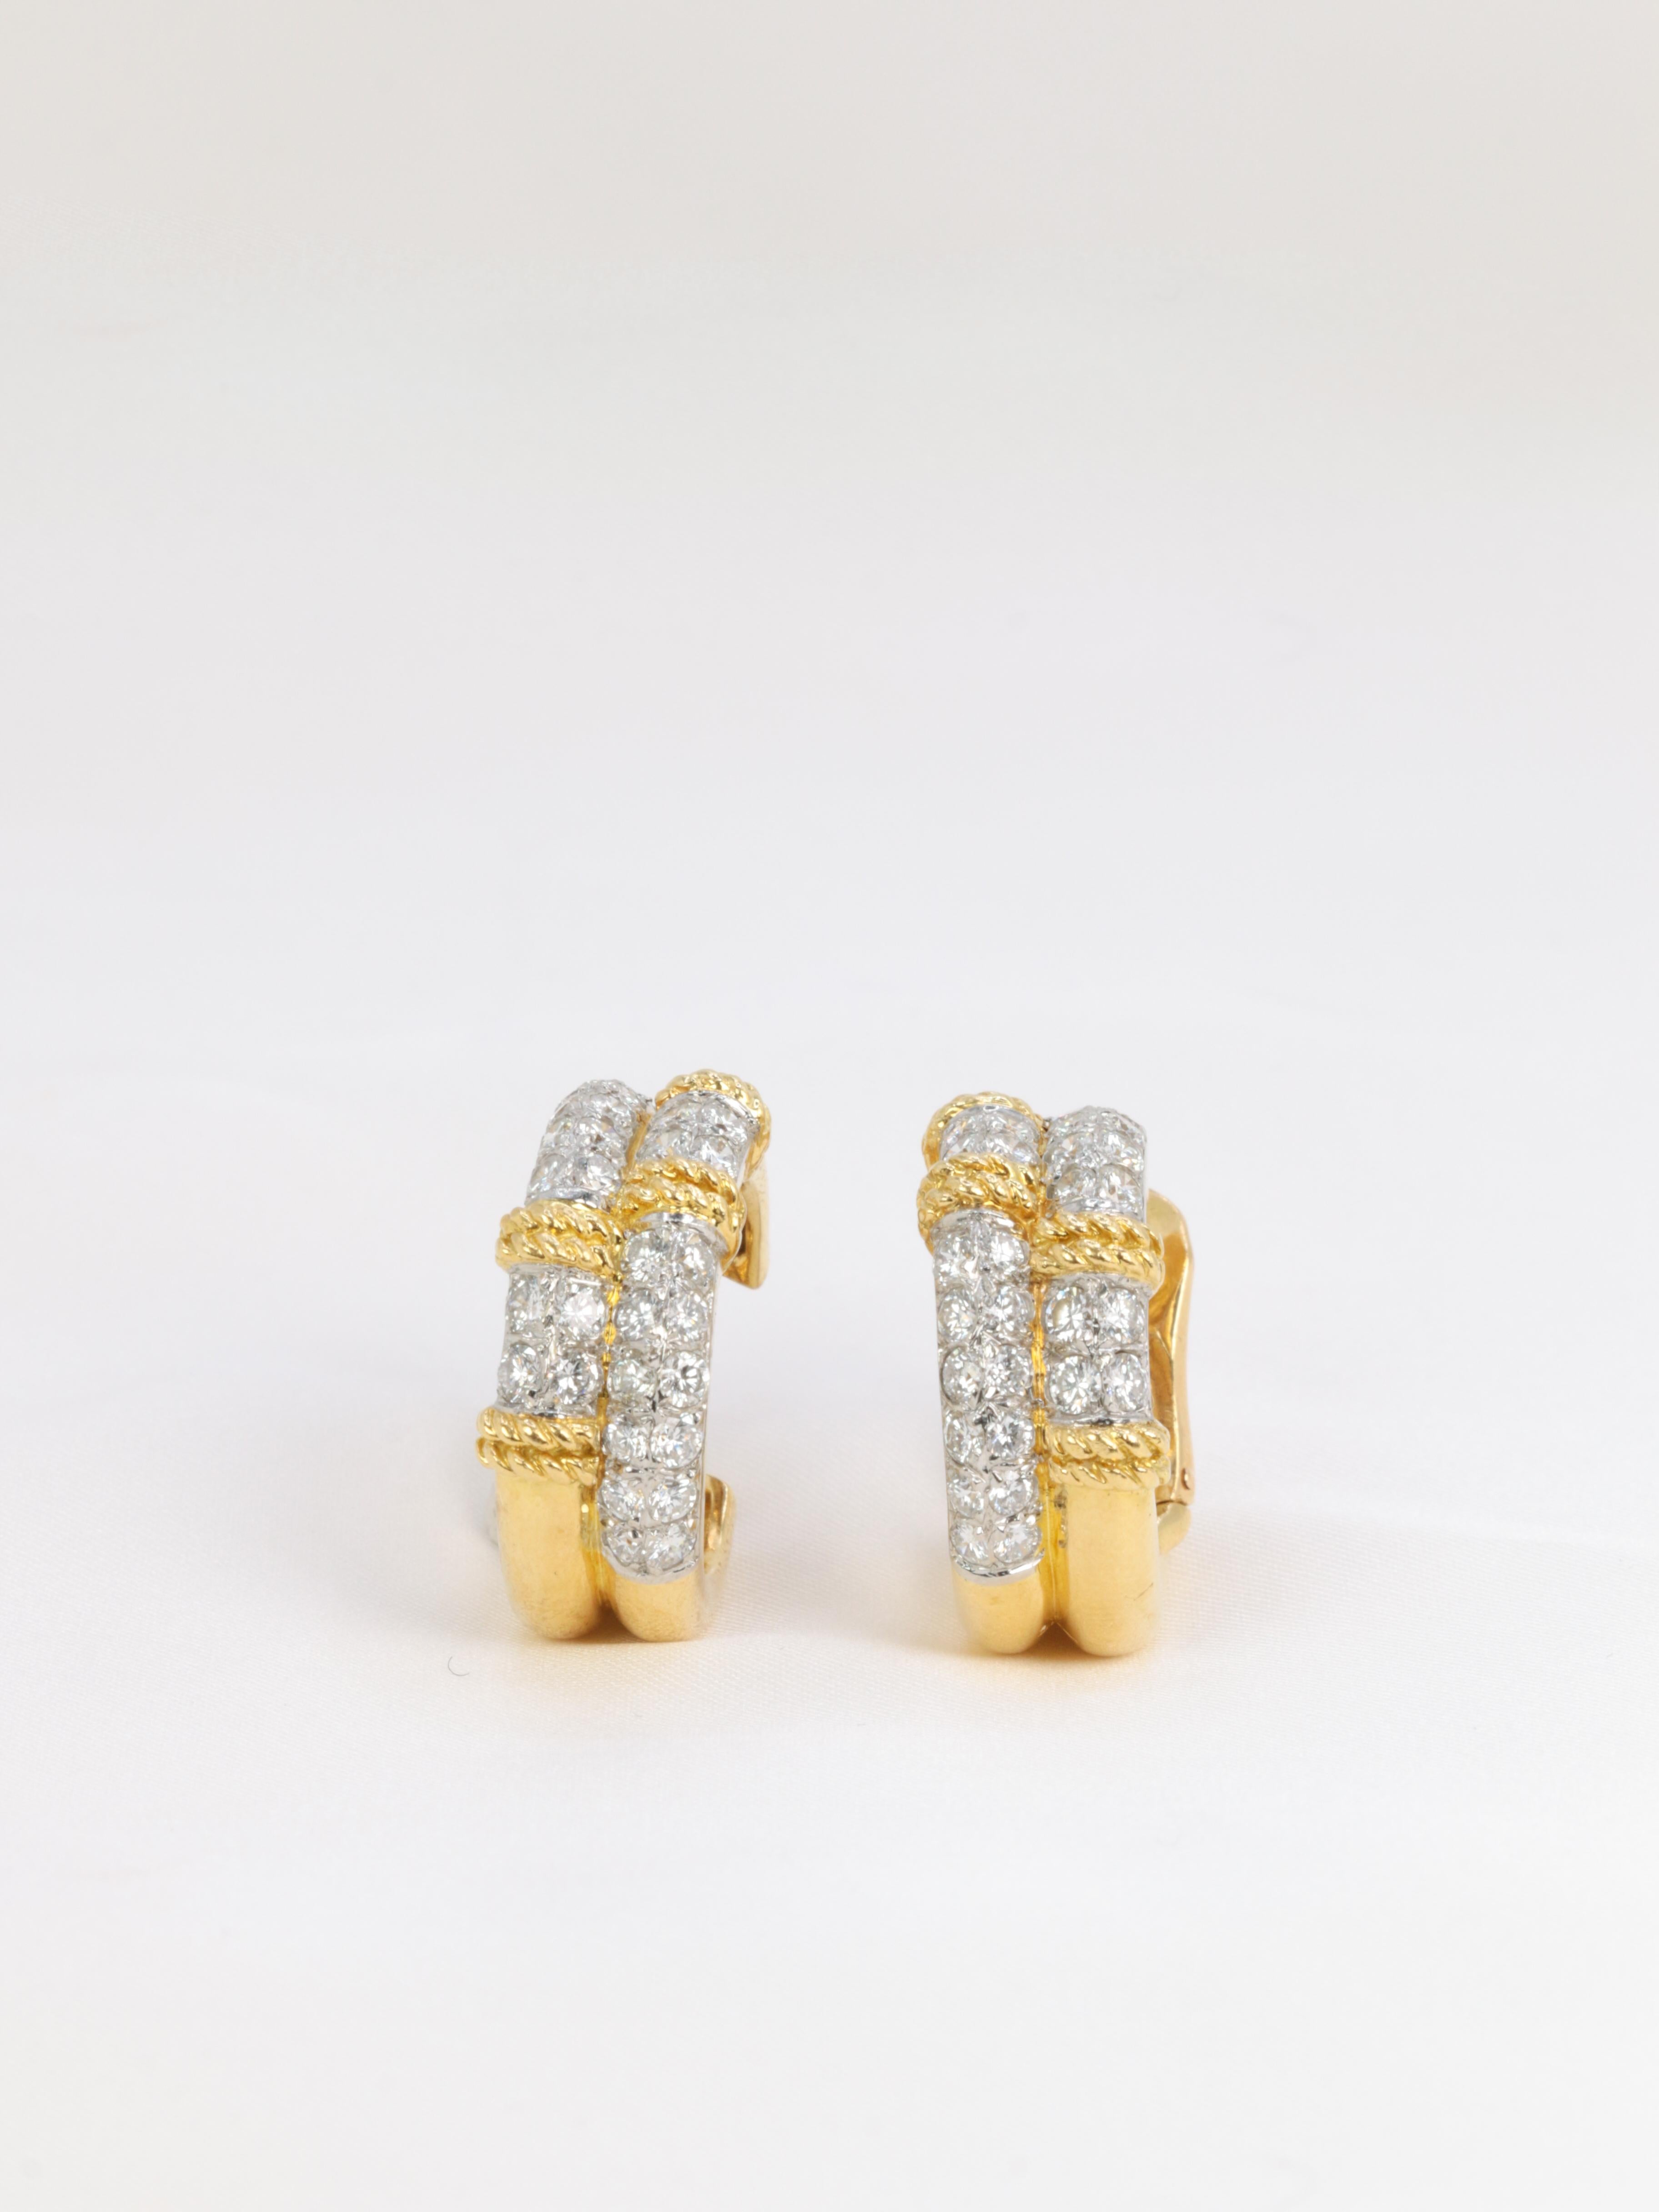 Ein Paar Creole-Ohrclips aus 18 Karat (75°/°°) Gelbgold und Platin, bestehend aus zwei Stäben, die jeweils mit zwei Reihen Diamanten besetzt sind und von zwei geflochtenen Golddrähten eingerahmt werden.
Französisches Werk aus den späten 1980er